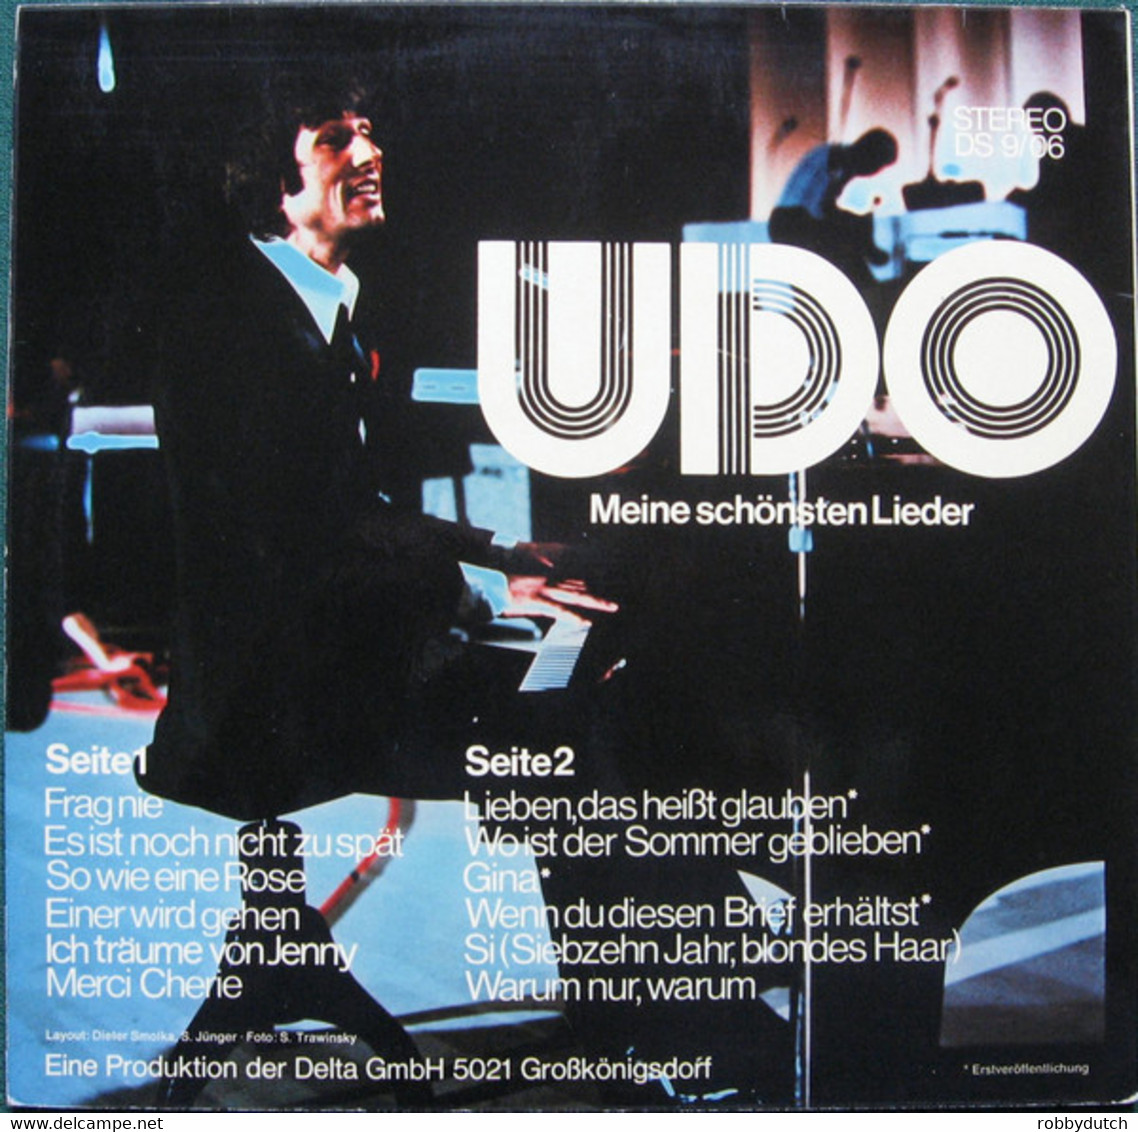 * LP * UDO JÜRGENS - MEINE SCHÖNSTEN LIEDER - Other - German Music